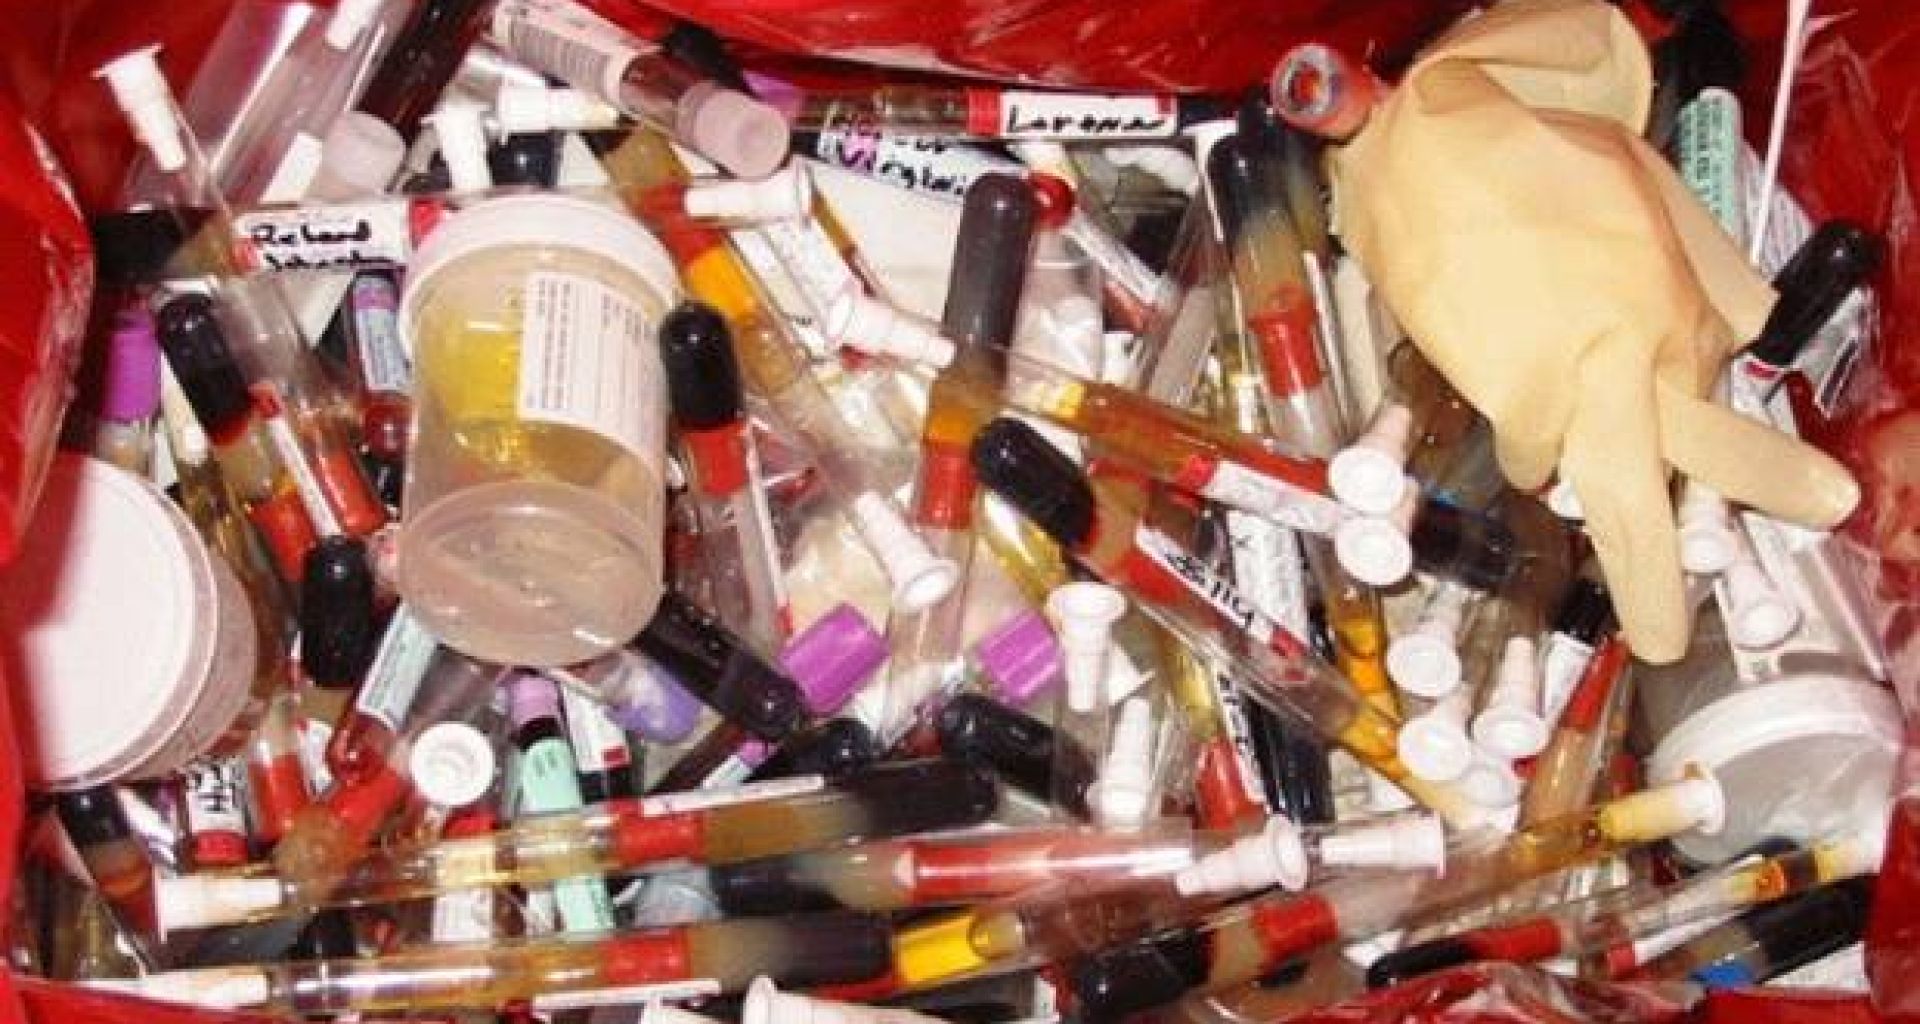 عوامل تساهم في شدة التعرض للميكروبات الممرضة من النفايات الطبية